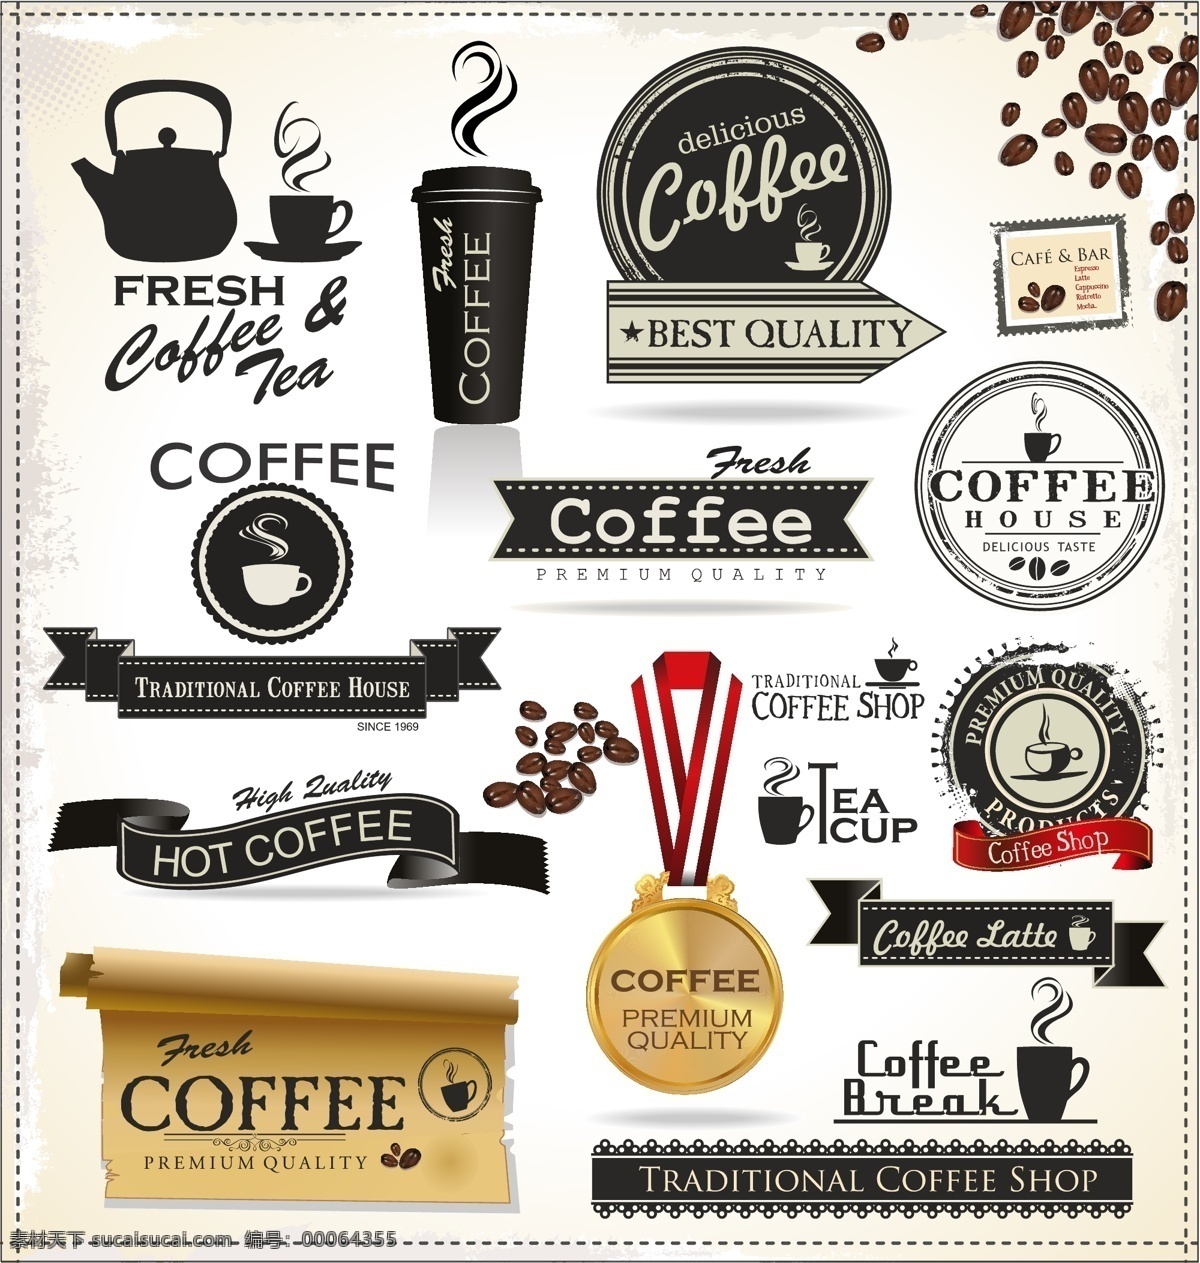 咖啡 主题 元素 矢量 标签 高清图片 金牌 卷边 咖啡豆 咖啡壶 丝带 图标 纸张 残边 纸杯 anmin 矢量图 其他矢量图